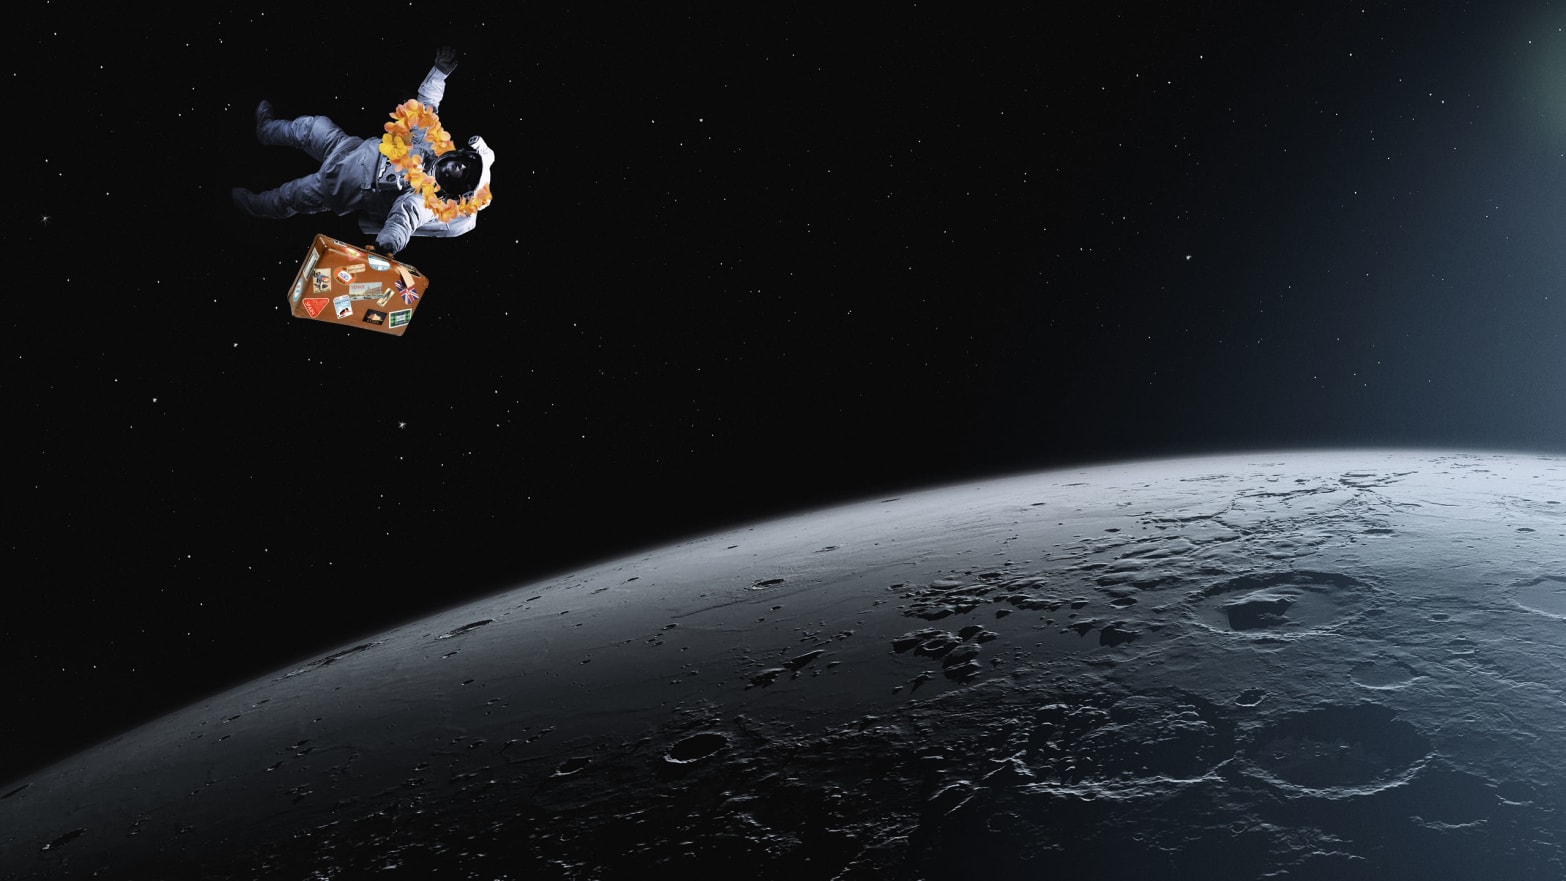 an astronaut goes toward the moon lunar tourism spacex space x Yusaku Maezawa elon musk big fucking rocket spacecraft